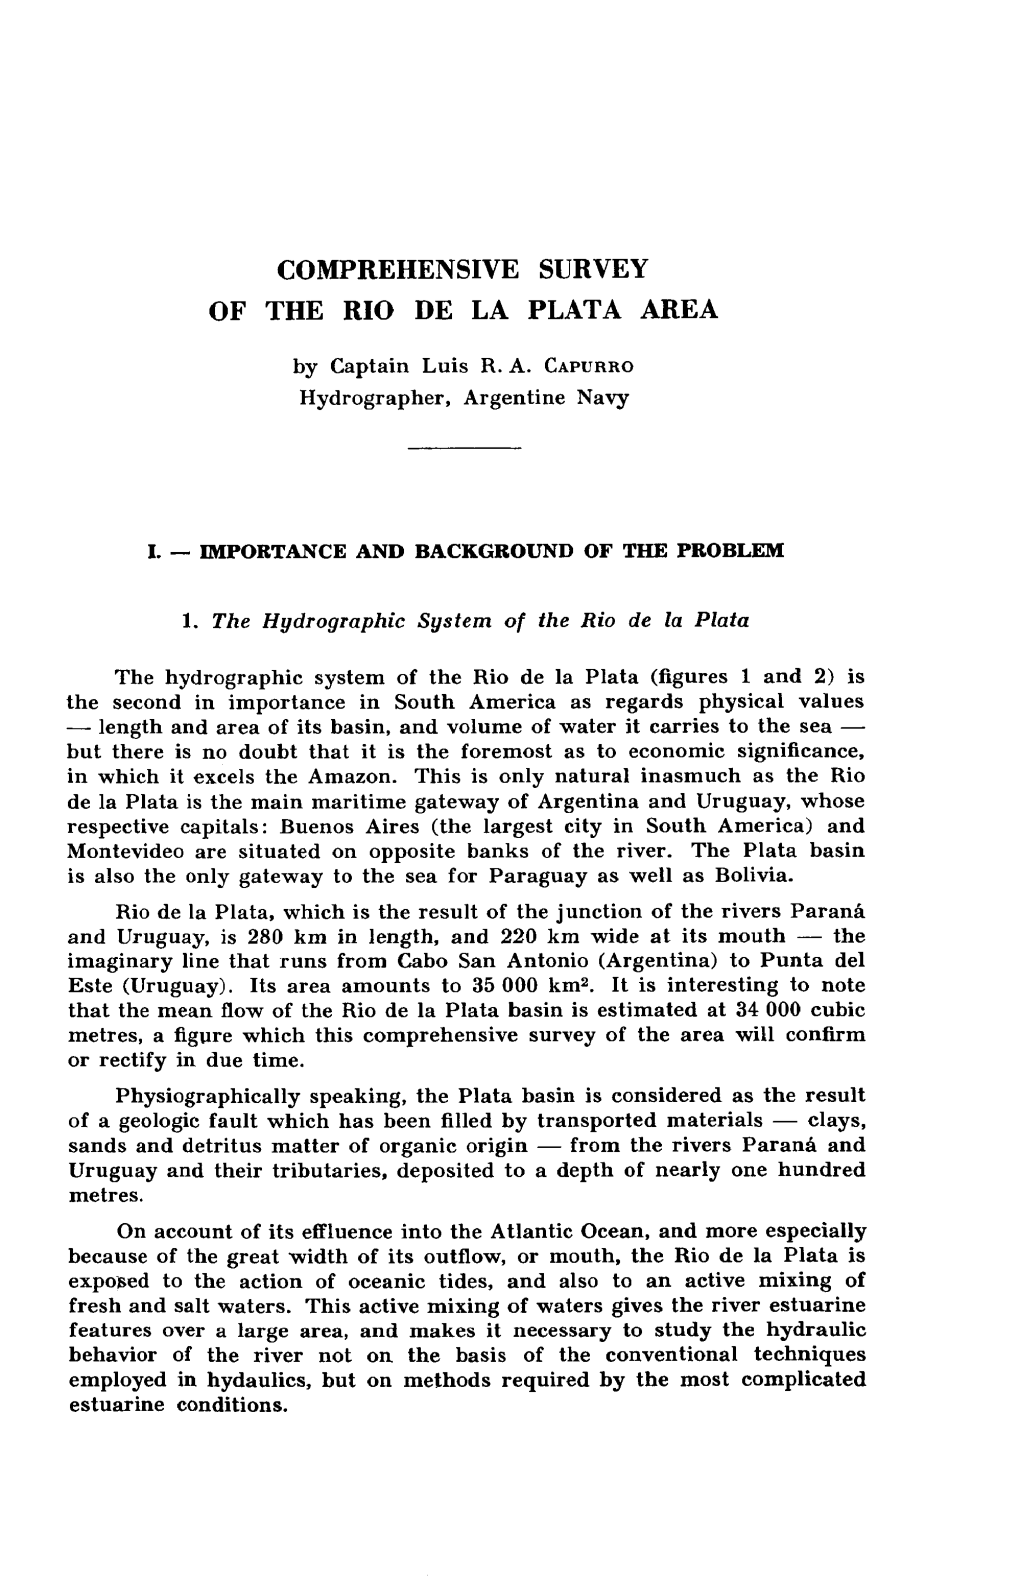 Comprehensive Survey of the Rio De La Plata Area